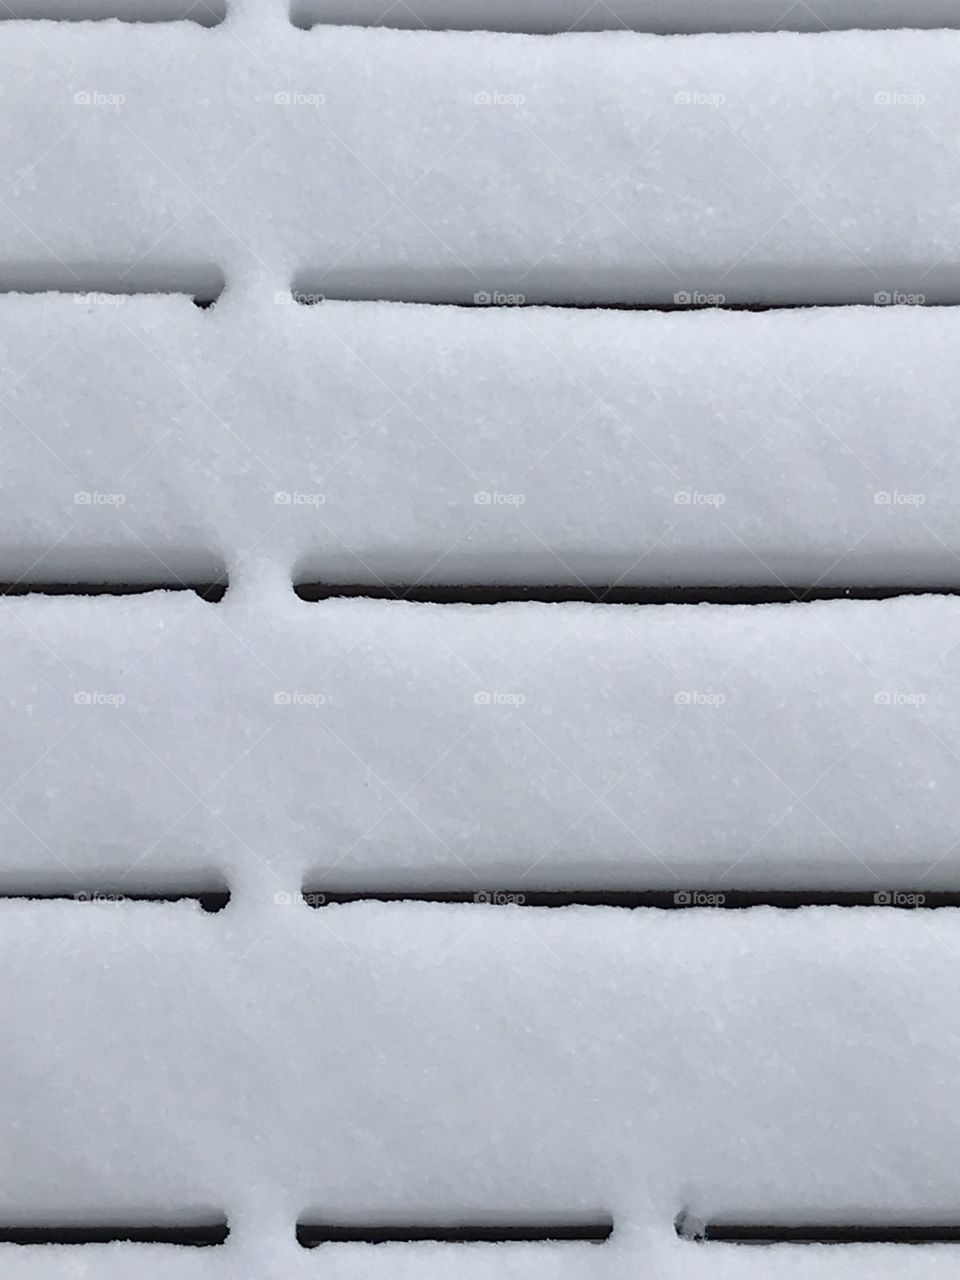 An up close of a snowy deck